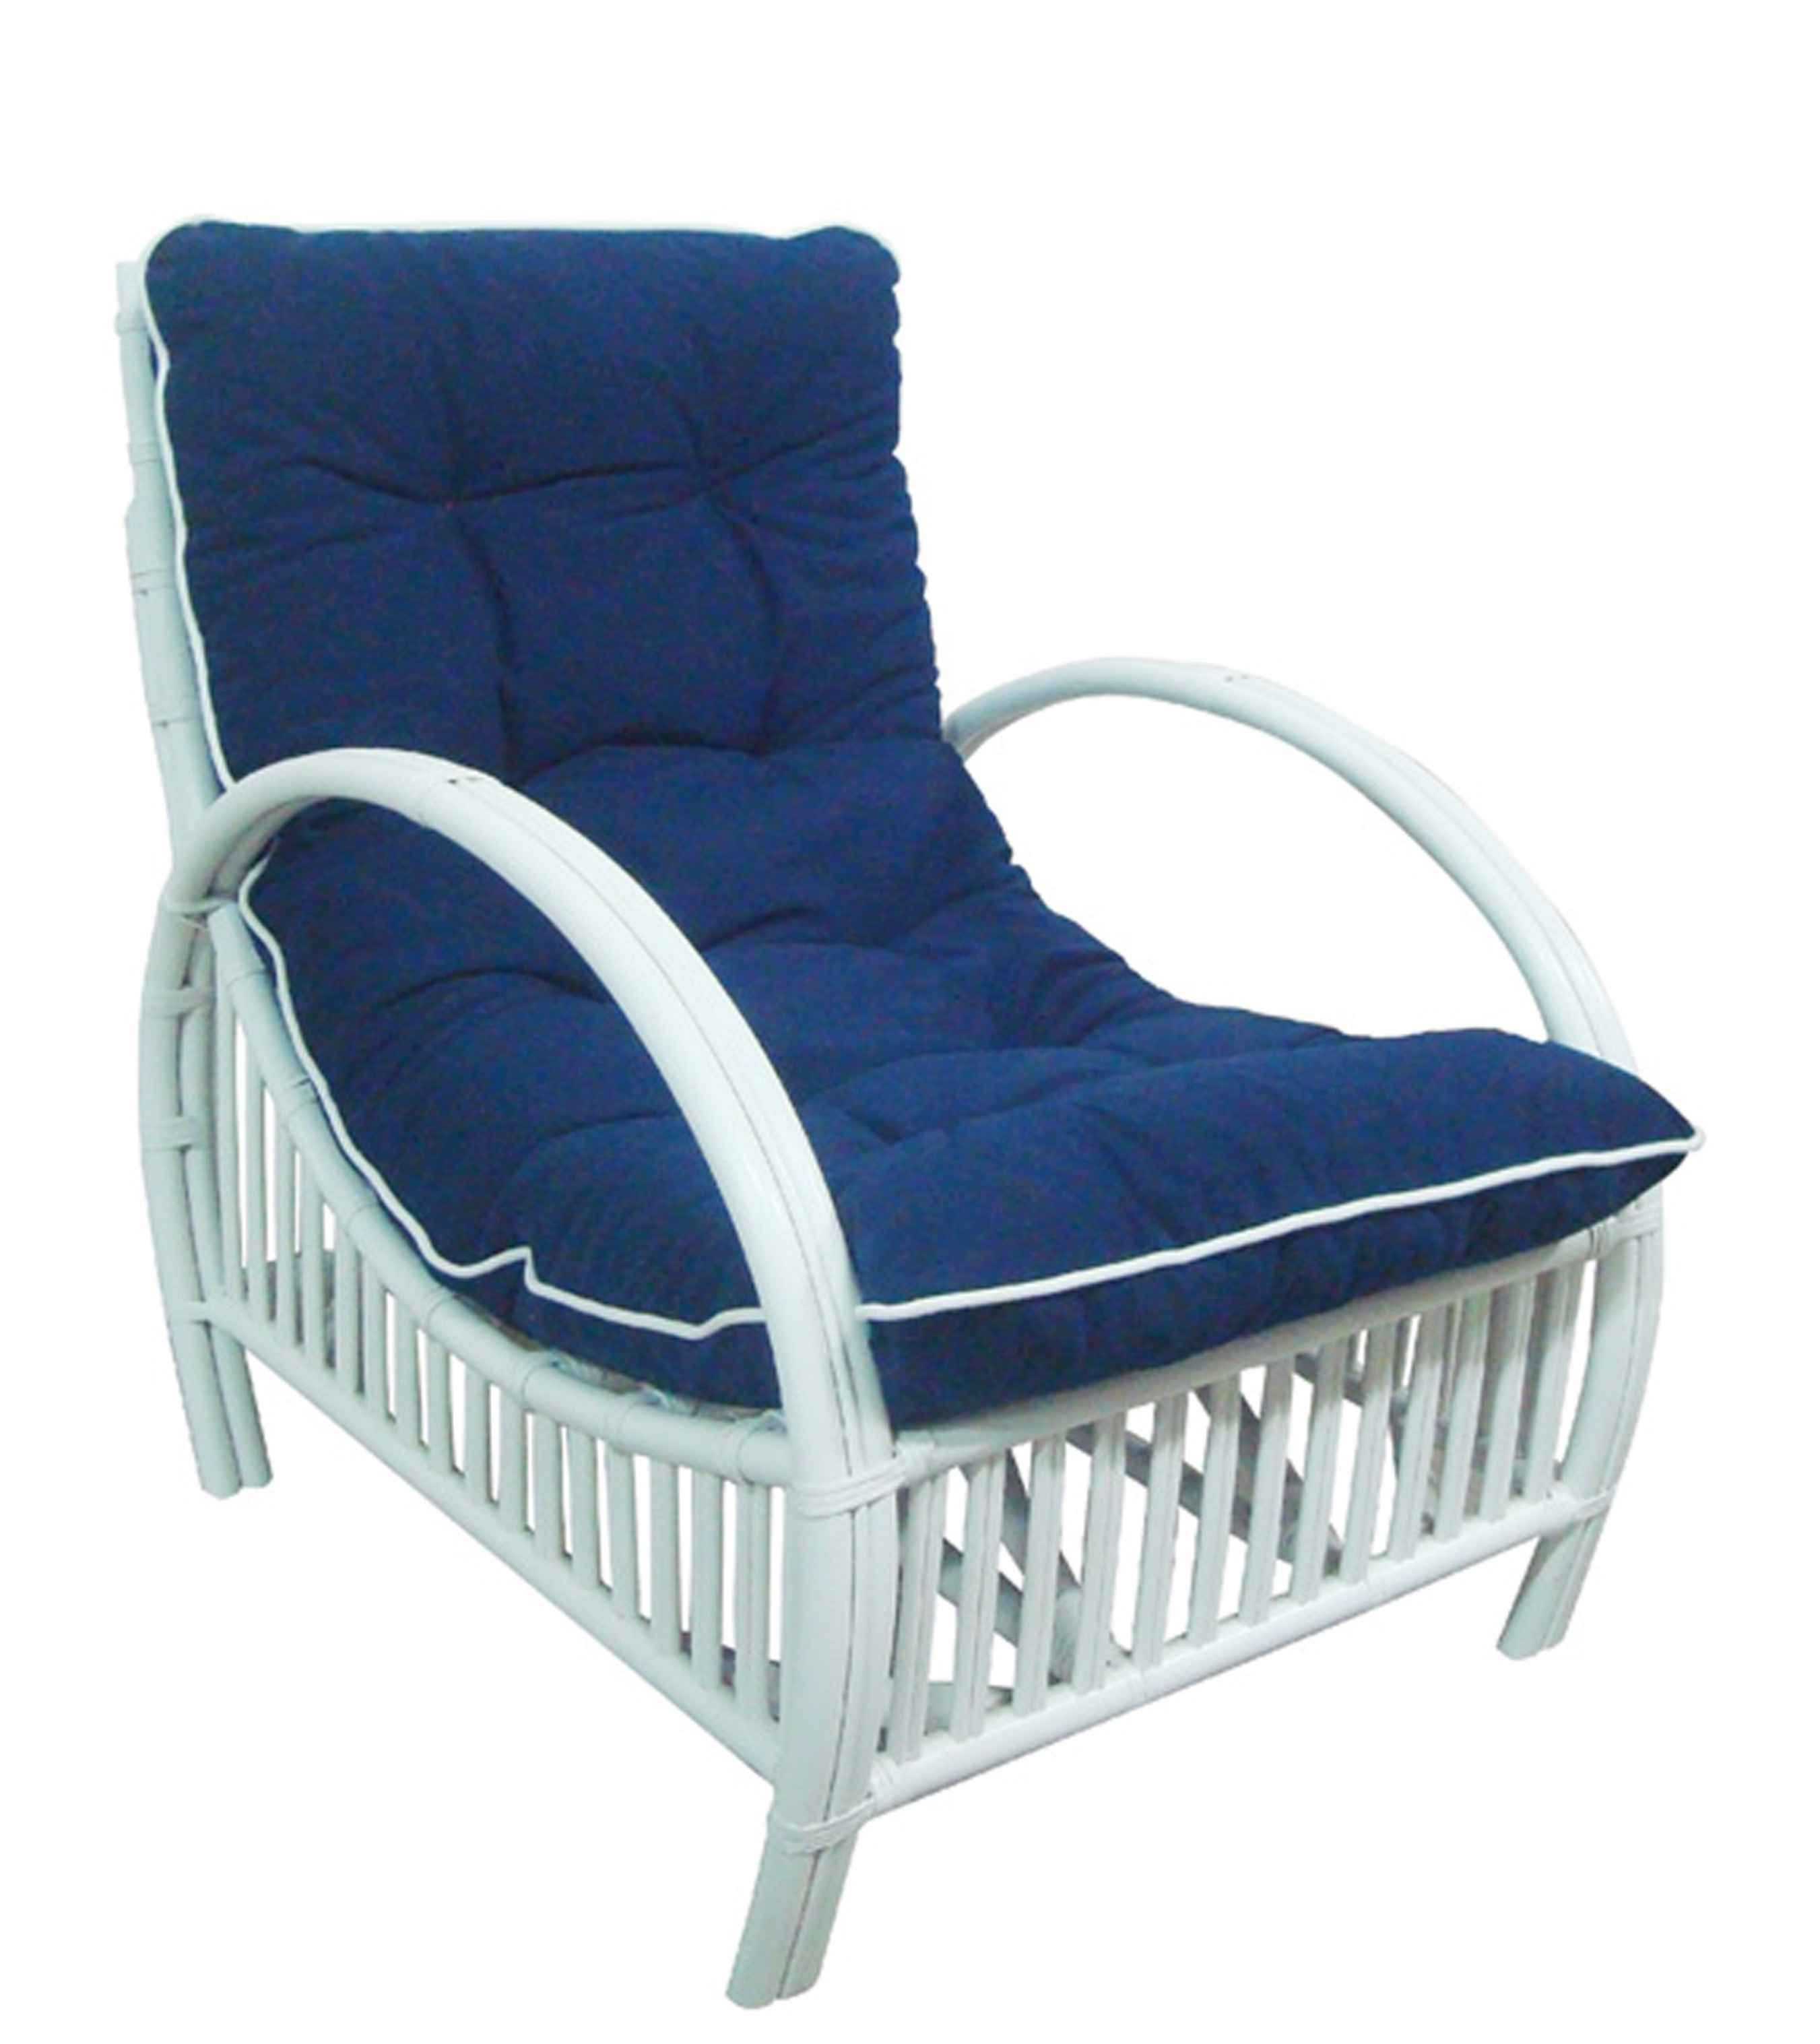 CR Hampton Rattan Chair with Cushion